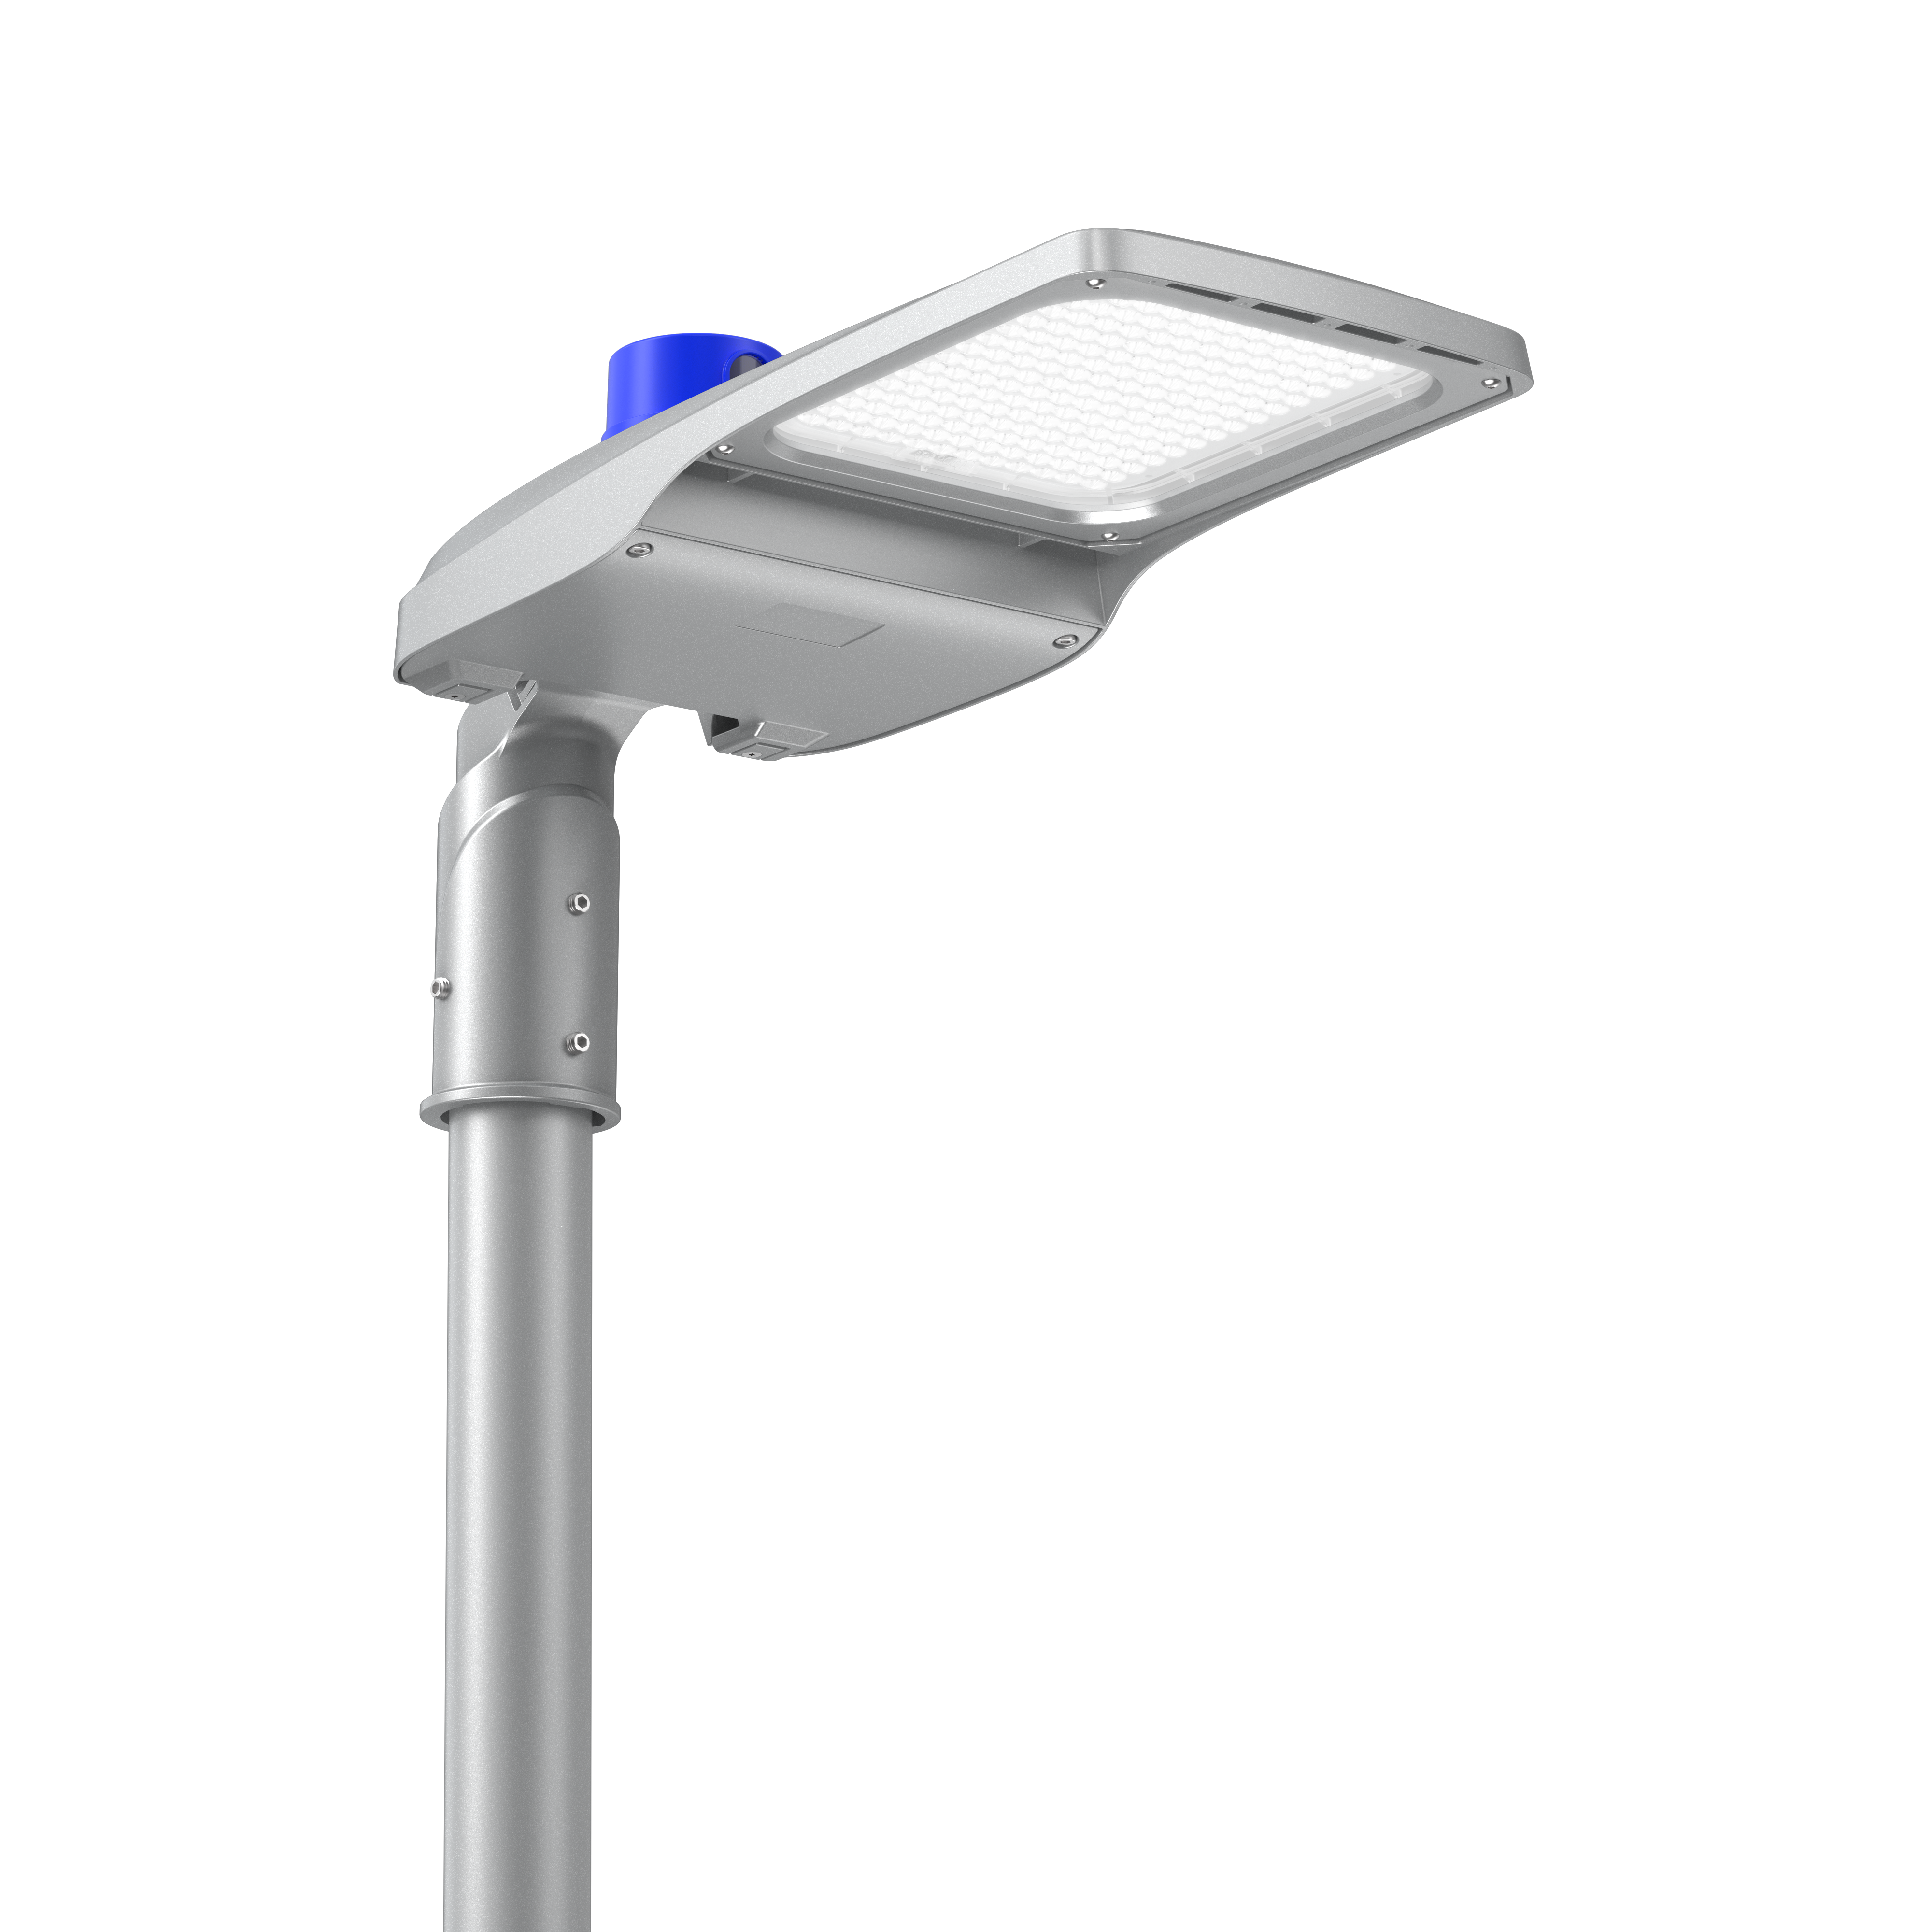 LEDEX - SATURNE - ST53-30 - Eclairage LED Routier & éclairage public